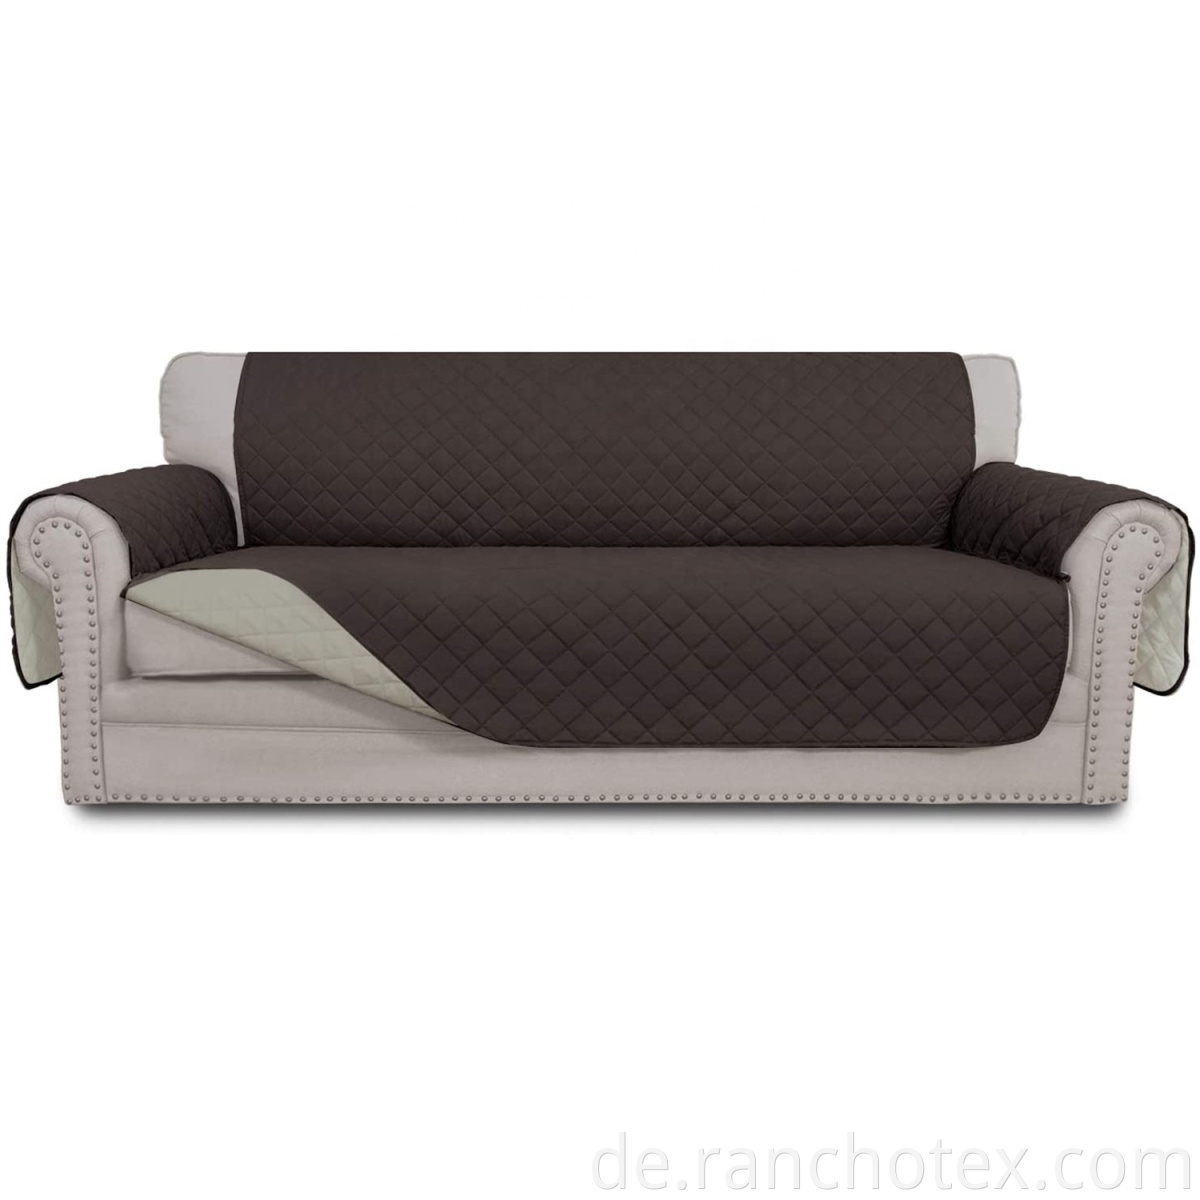 Oeko-TEX-Zertifikat wasserdichte Sofa Deckung 100%Polyester Mikrofaser-Sofa Couch Deckungen Schlupfdecke wasserfest